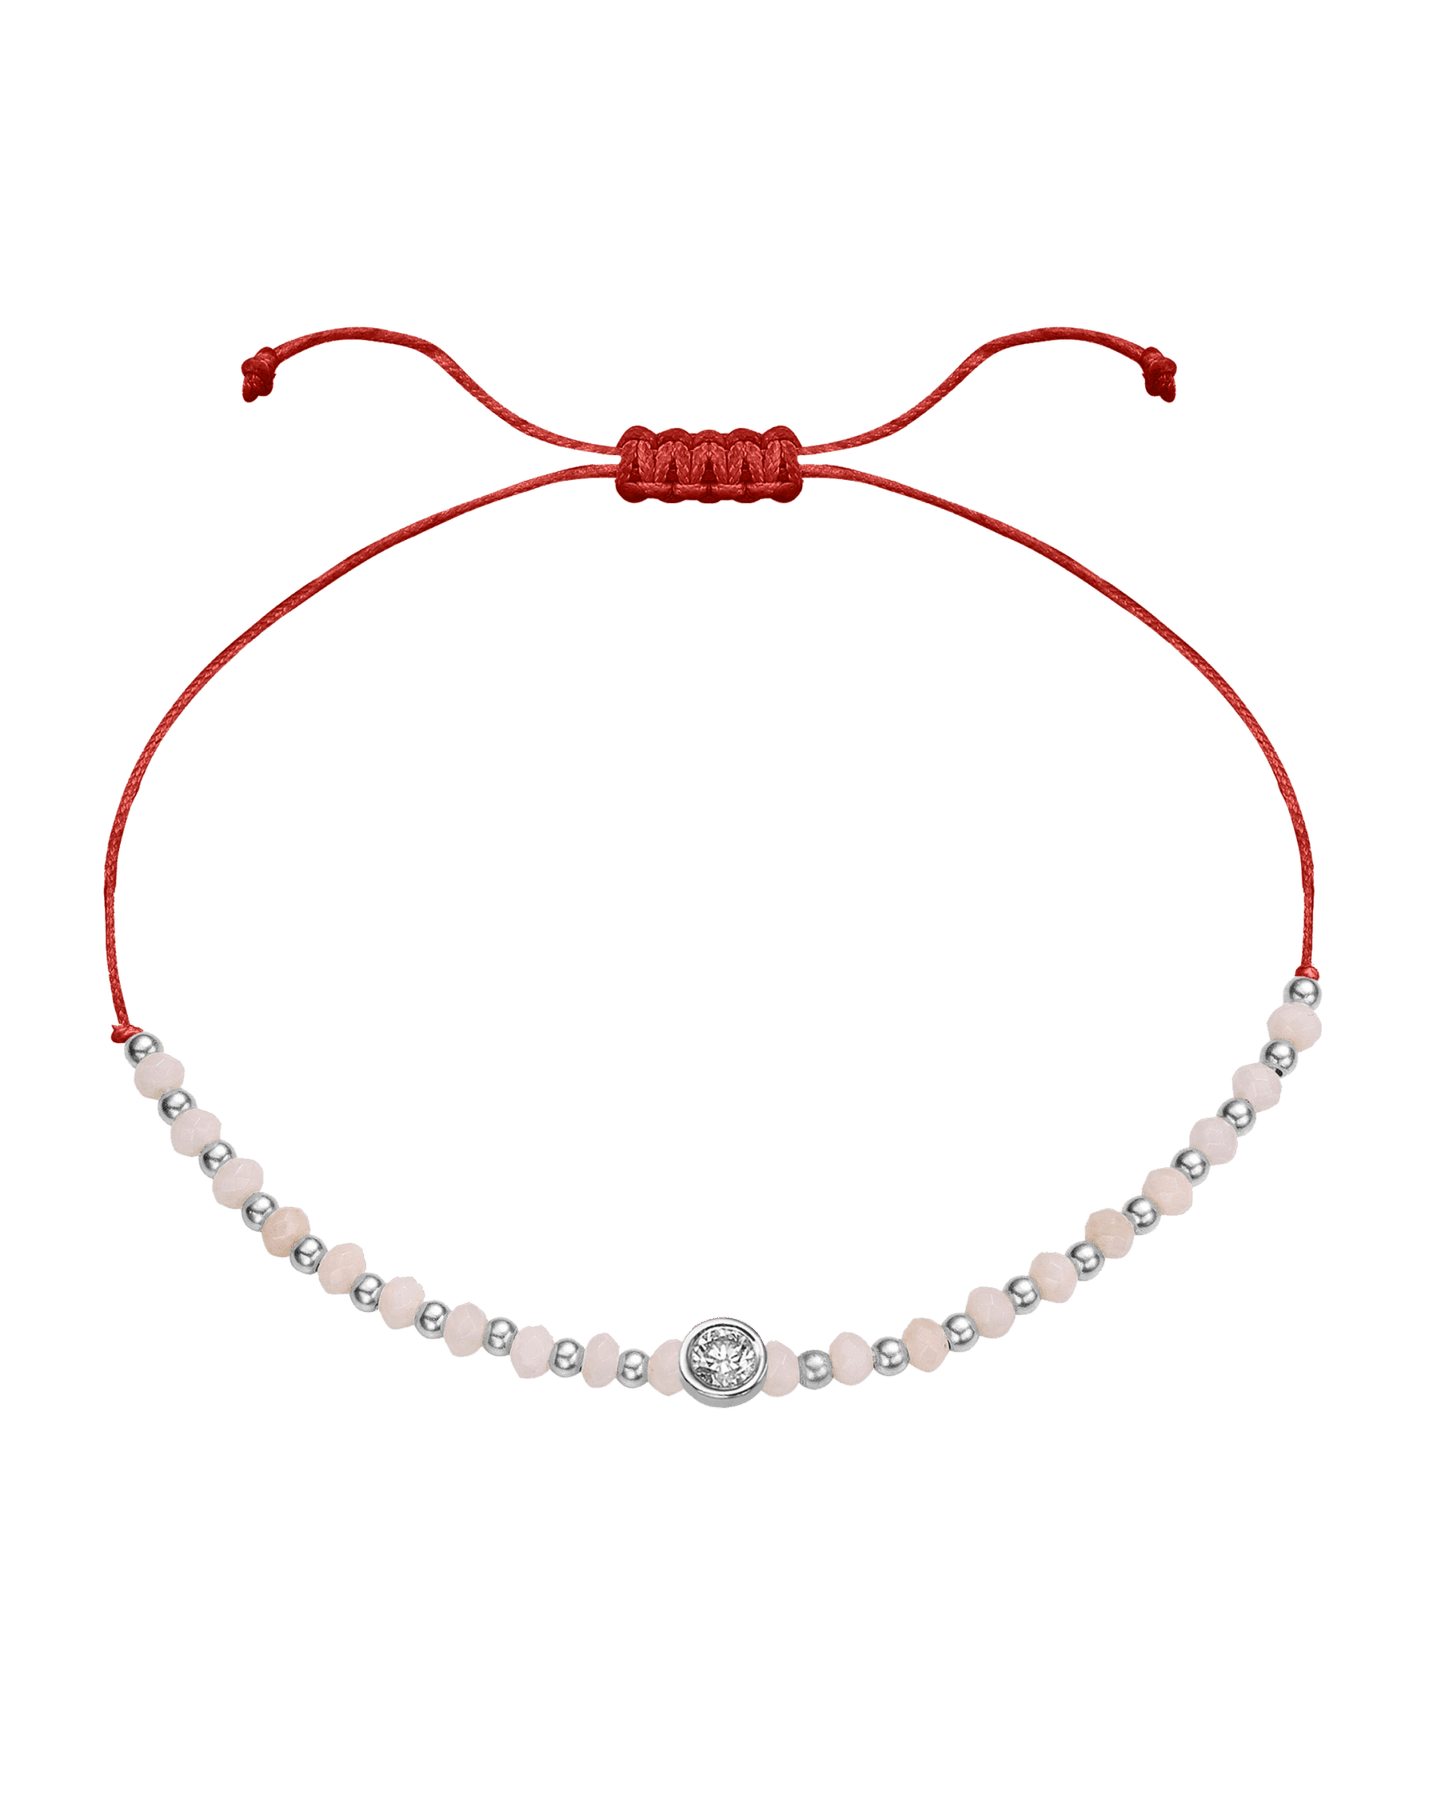 Rhodochrosite Gemstone String of Love Bracelet for Compassion - 14K White Gold Bracelet 14K Solid Gold Red Large: 0.1ct 